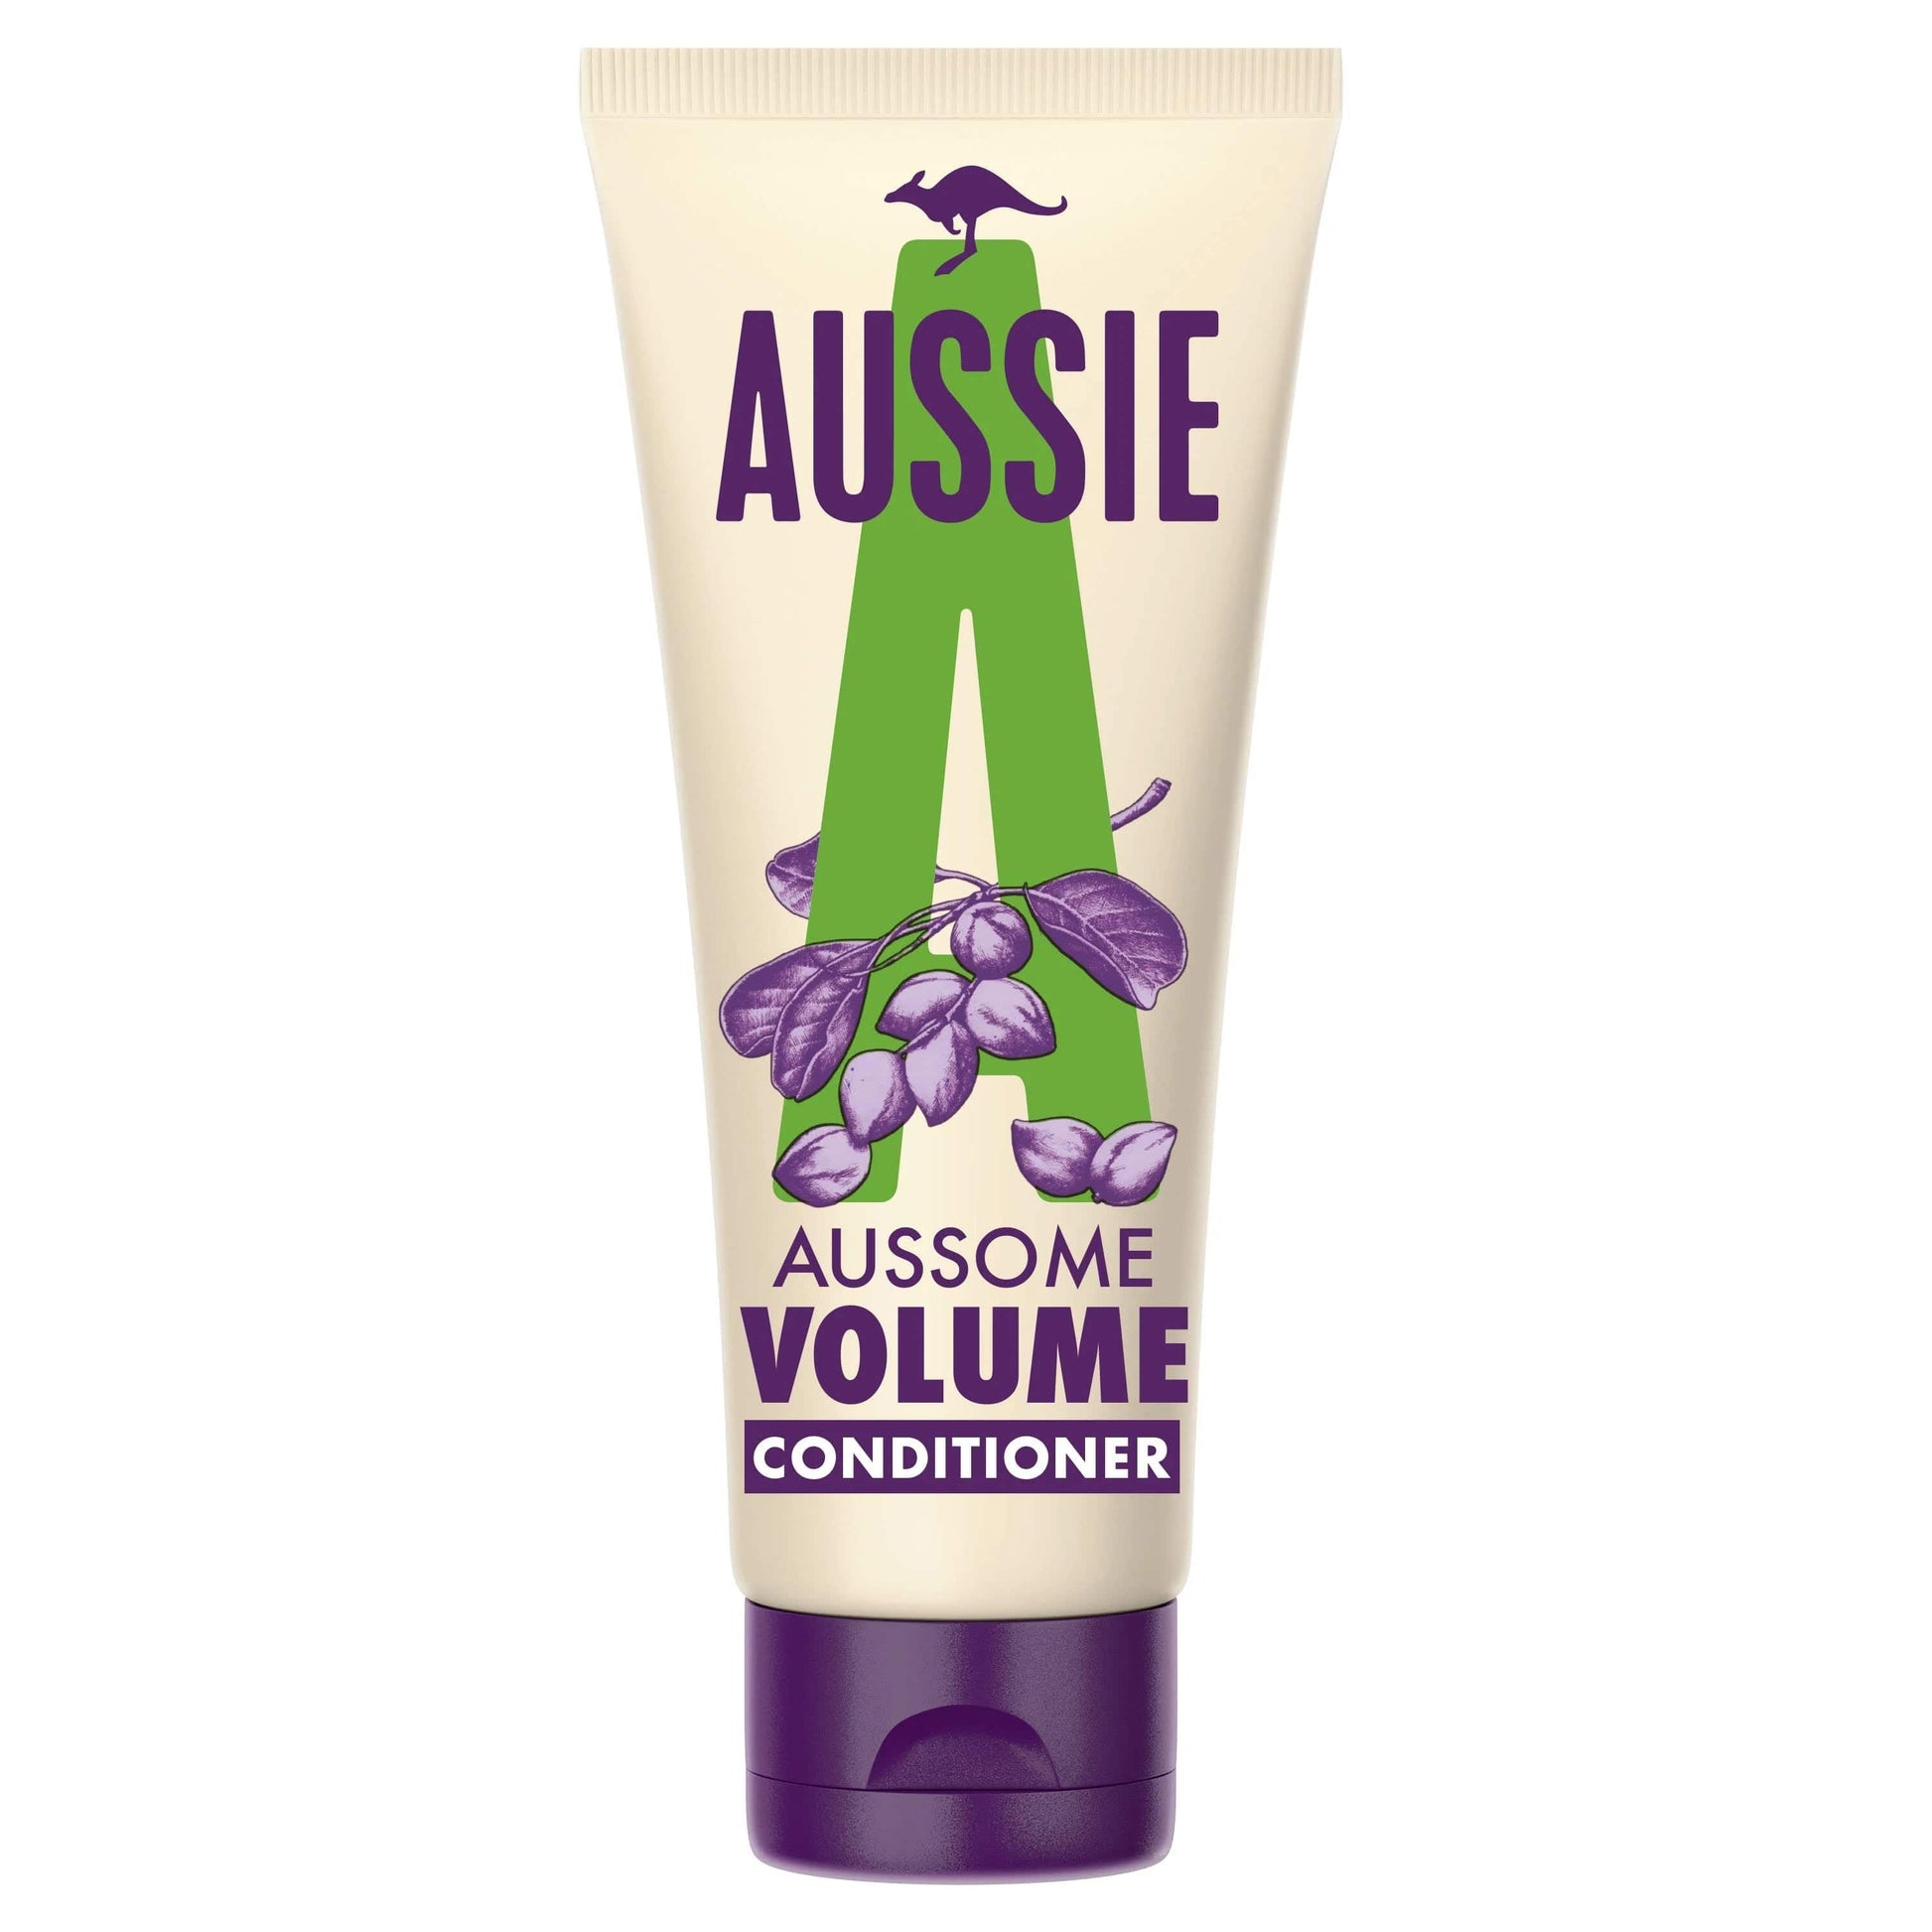 Aussie - Apres-shampoing "Aussome Volume Conditioner "- 200ml - Aussie - Ethni Beauty Market